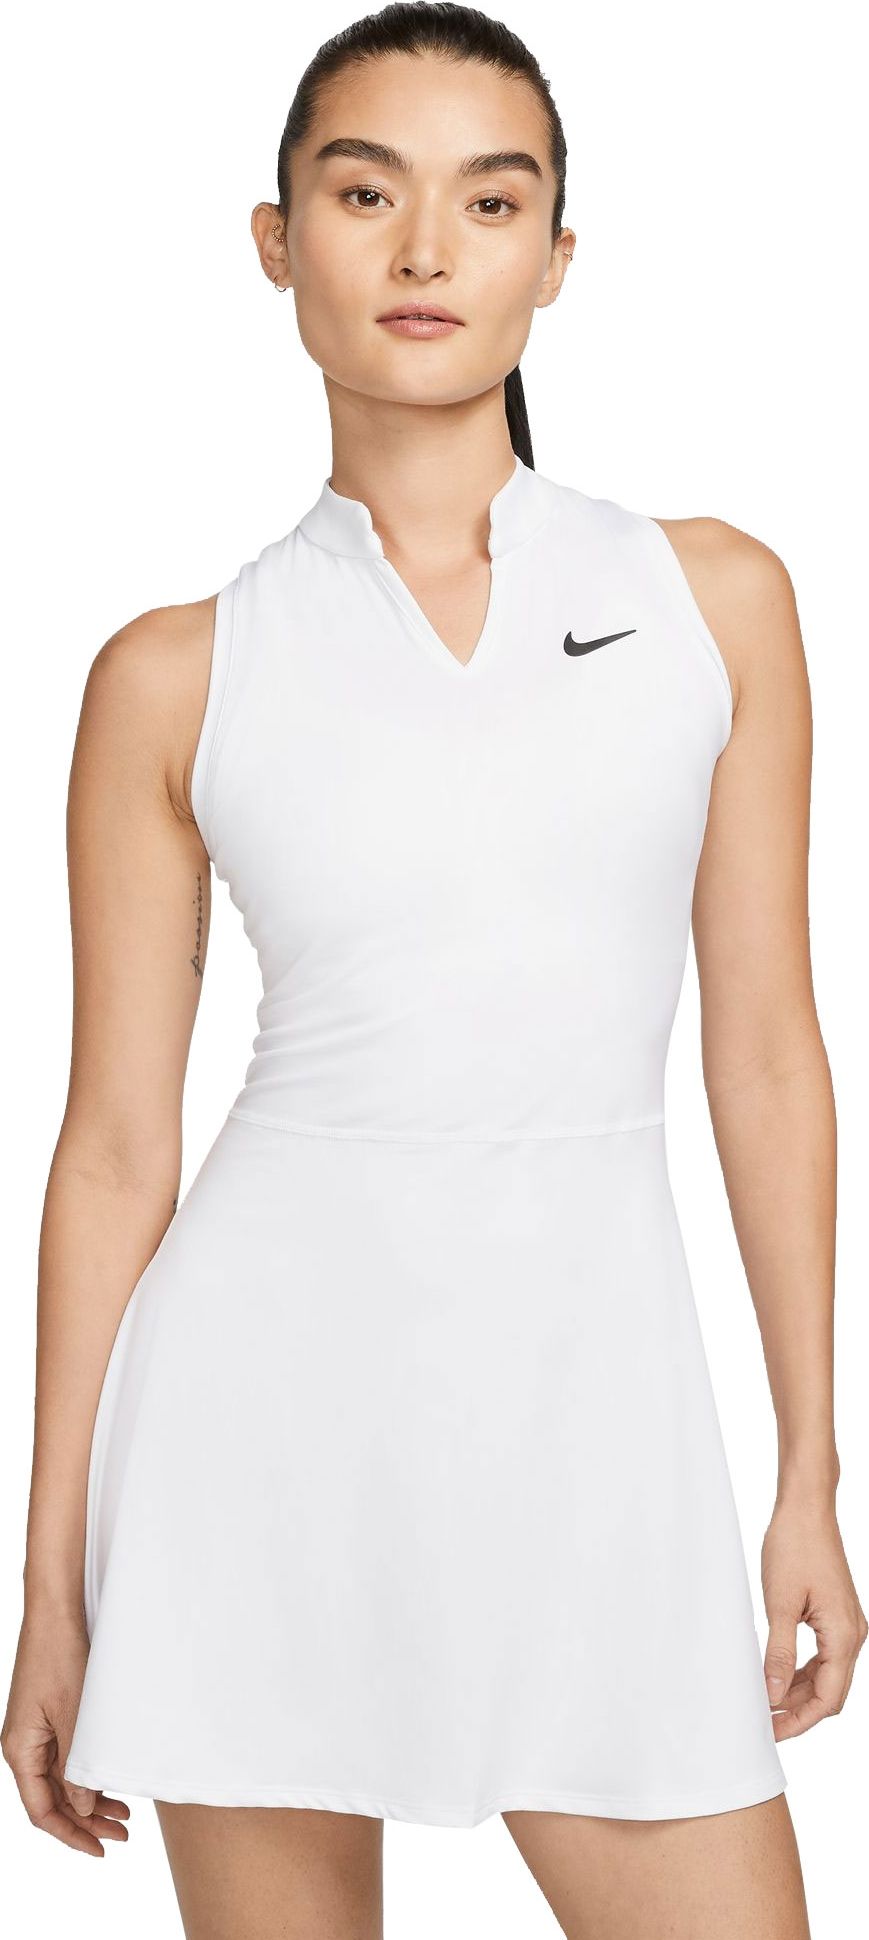 Goed opgeleid Ambassadeur generatie Nike Court Victory Tennis/Padel Jurk voor Dames | Wit | Teamswear